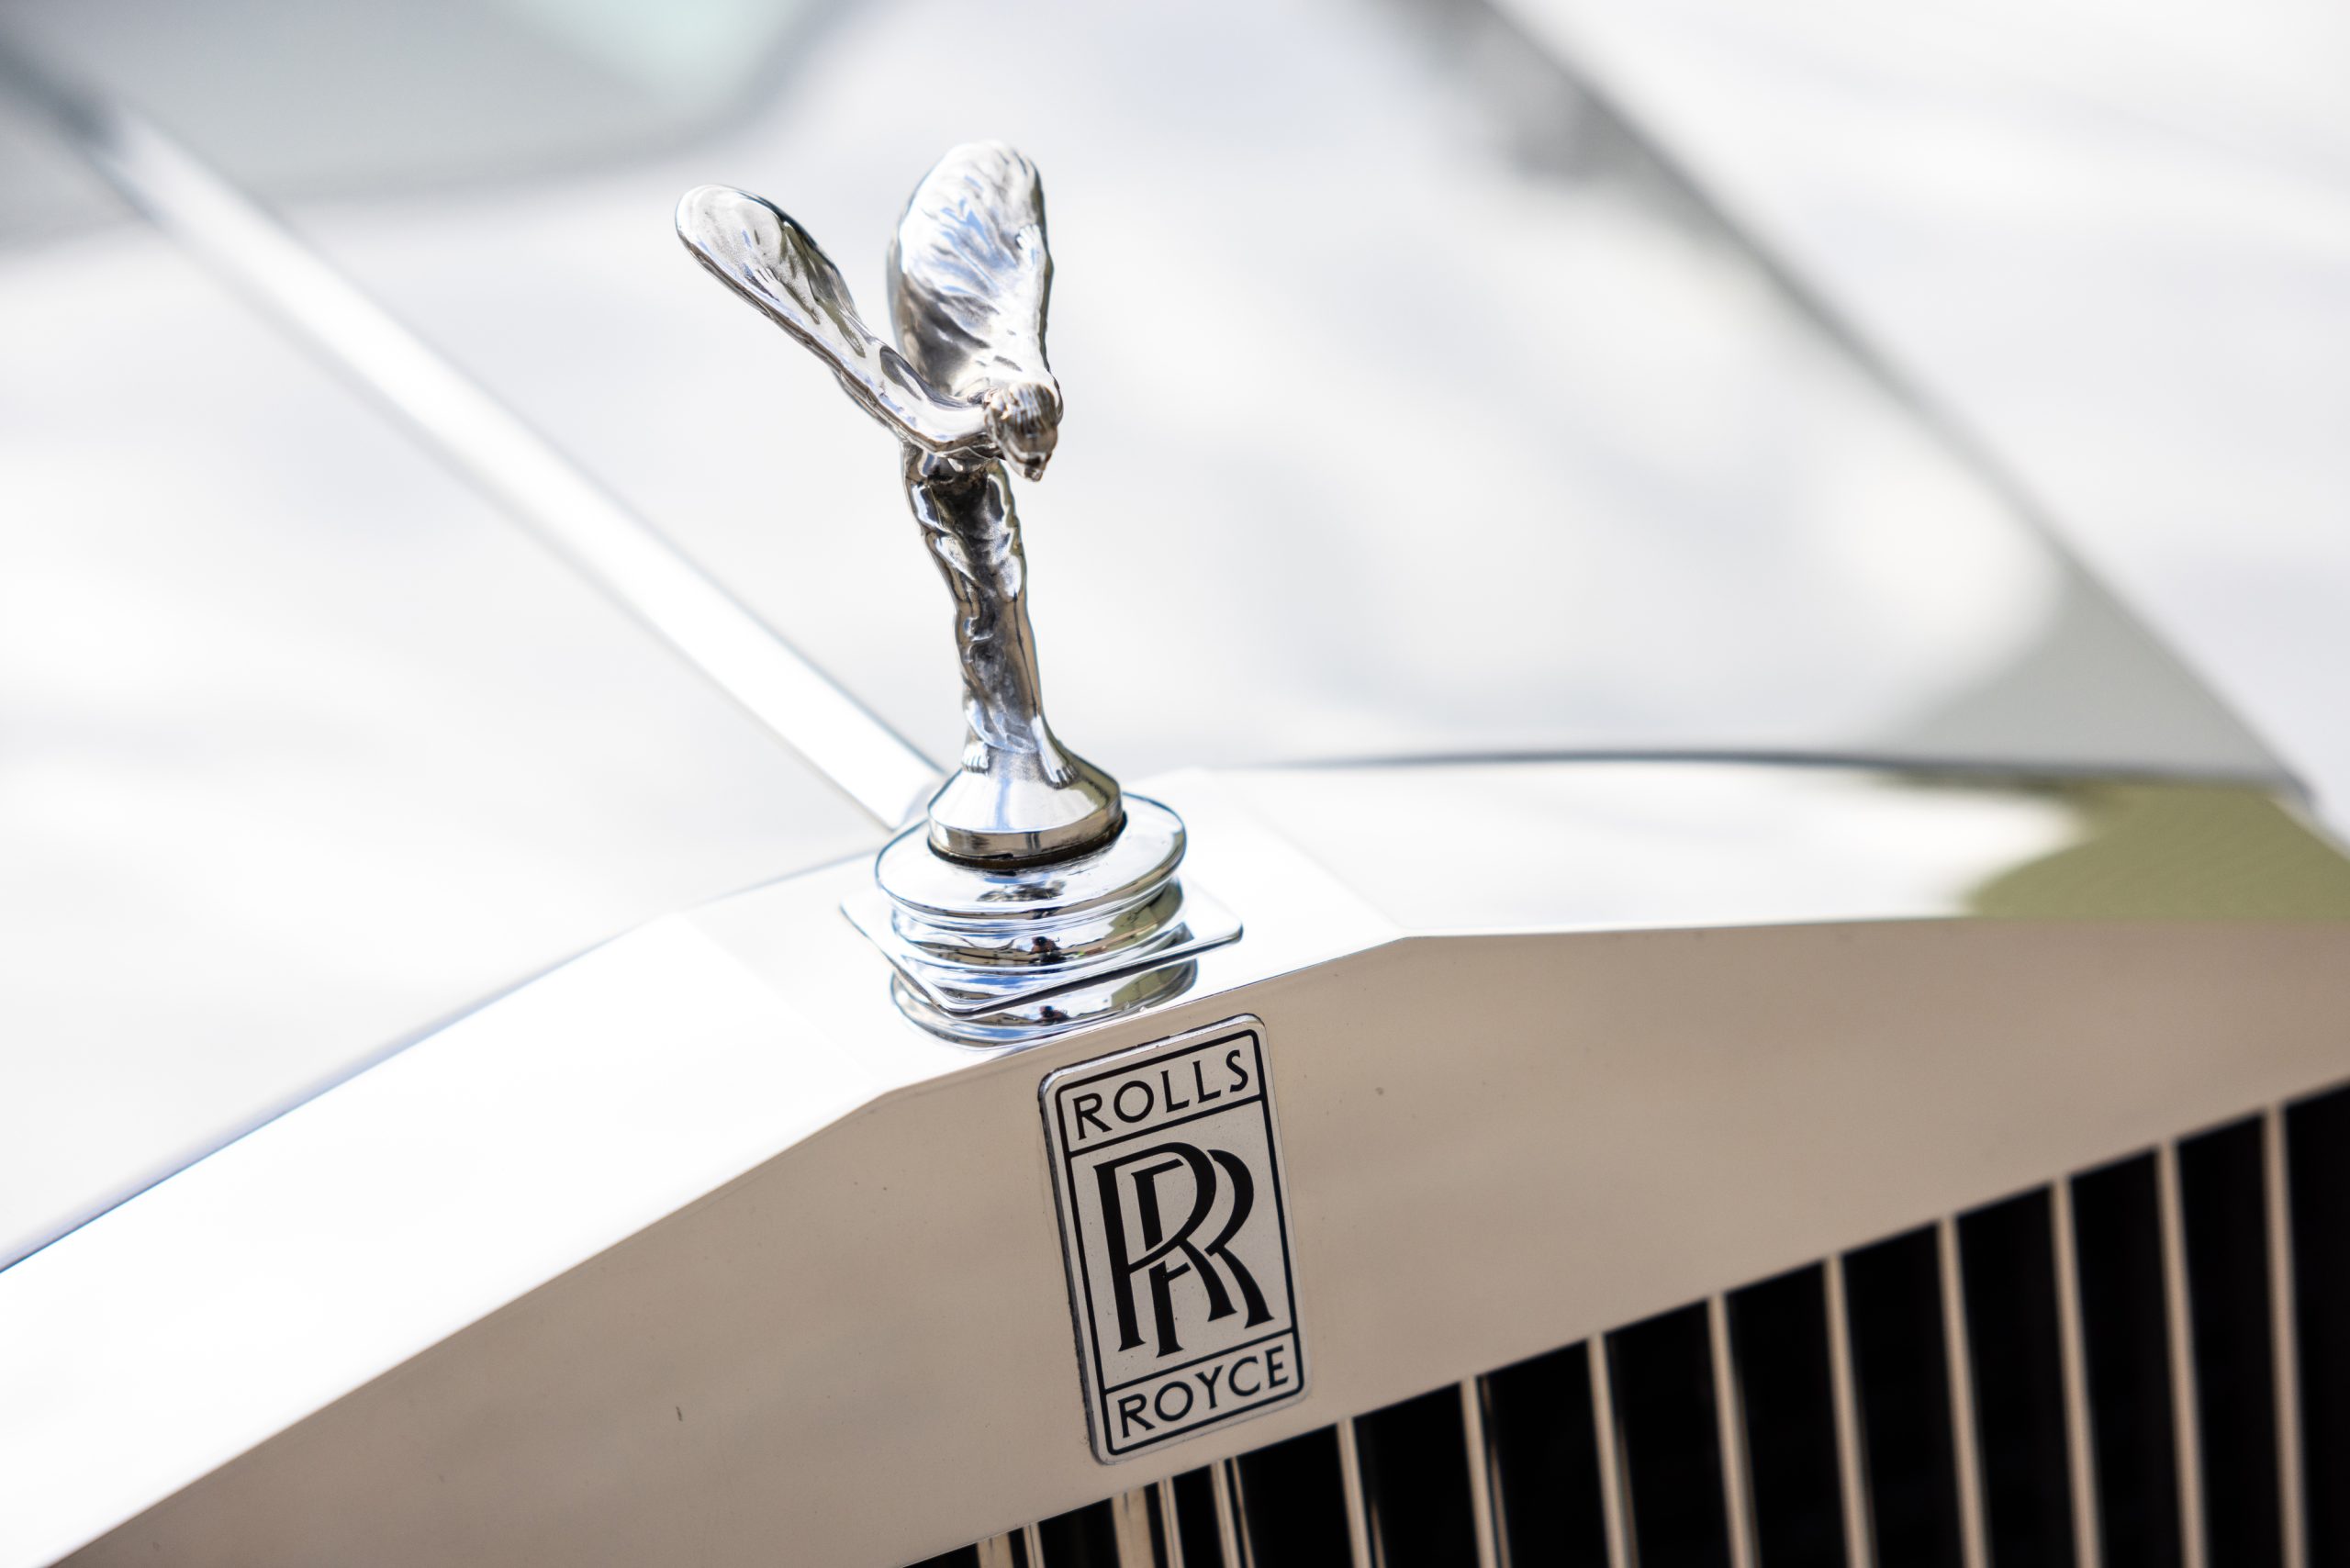 Rolls-Royce owned by Freddie Mercury